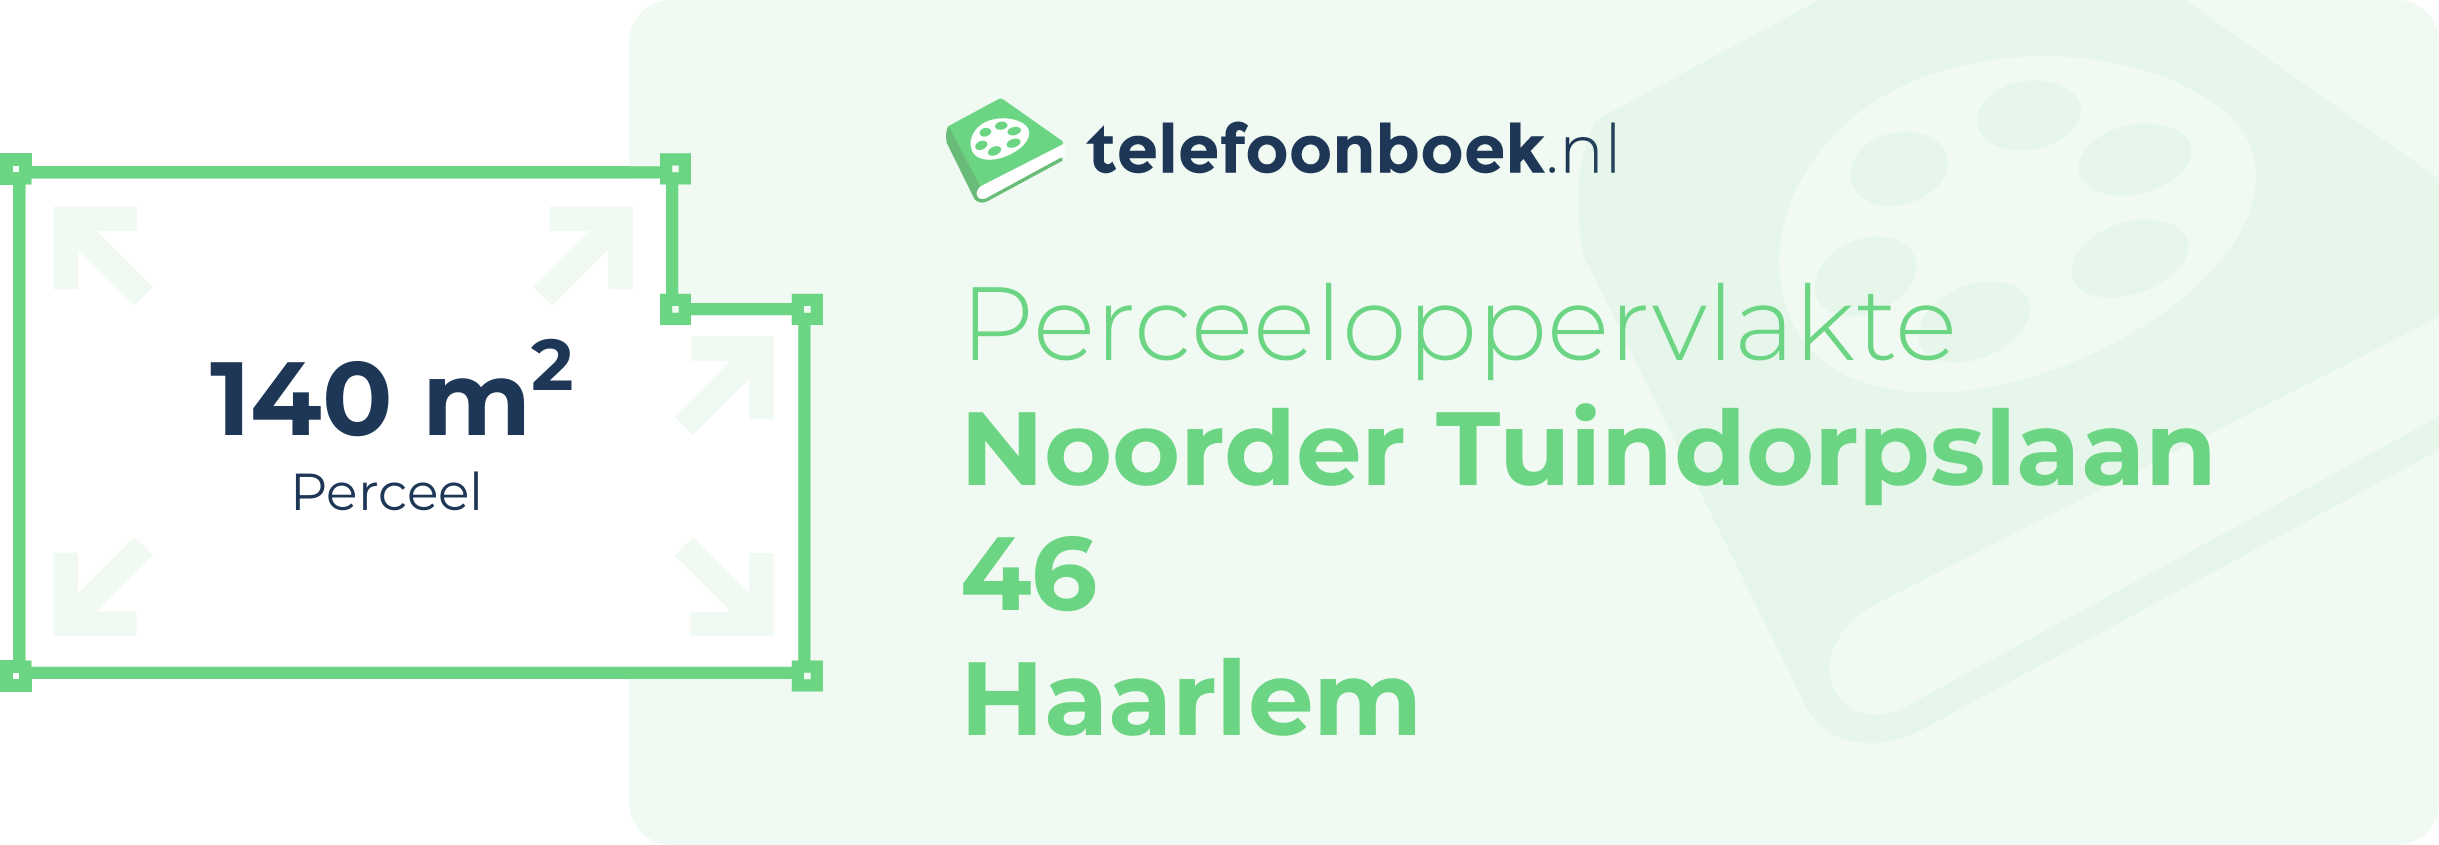 Perceeloppervlakte Noorder Tuindorpslaan 46 Haarlem